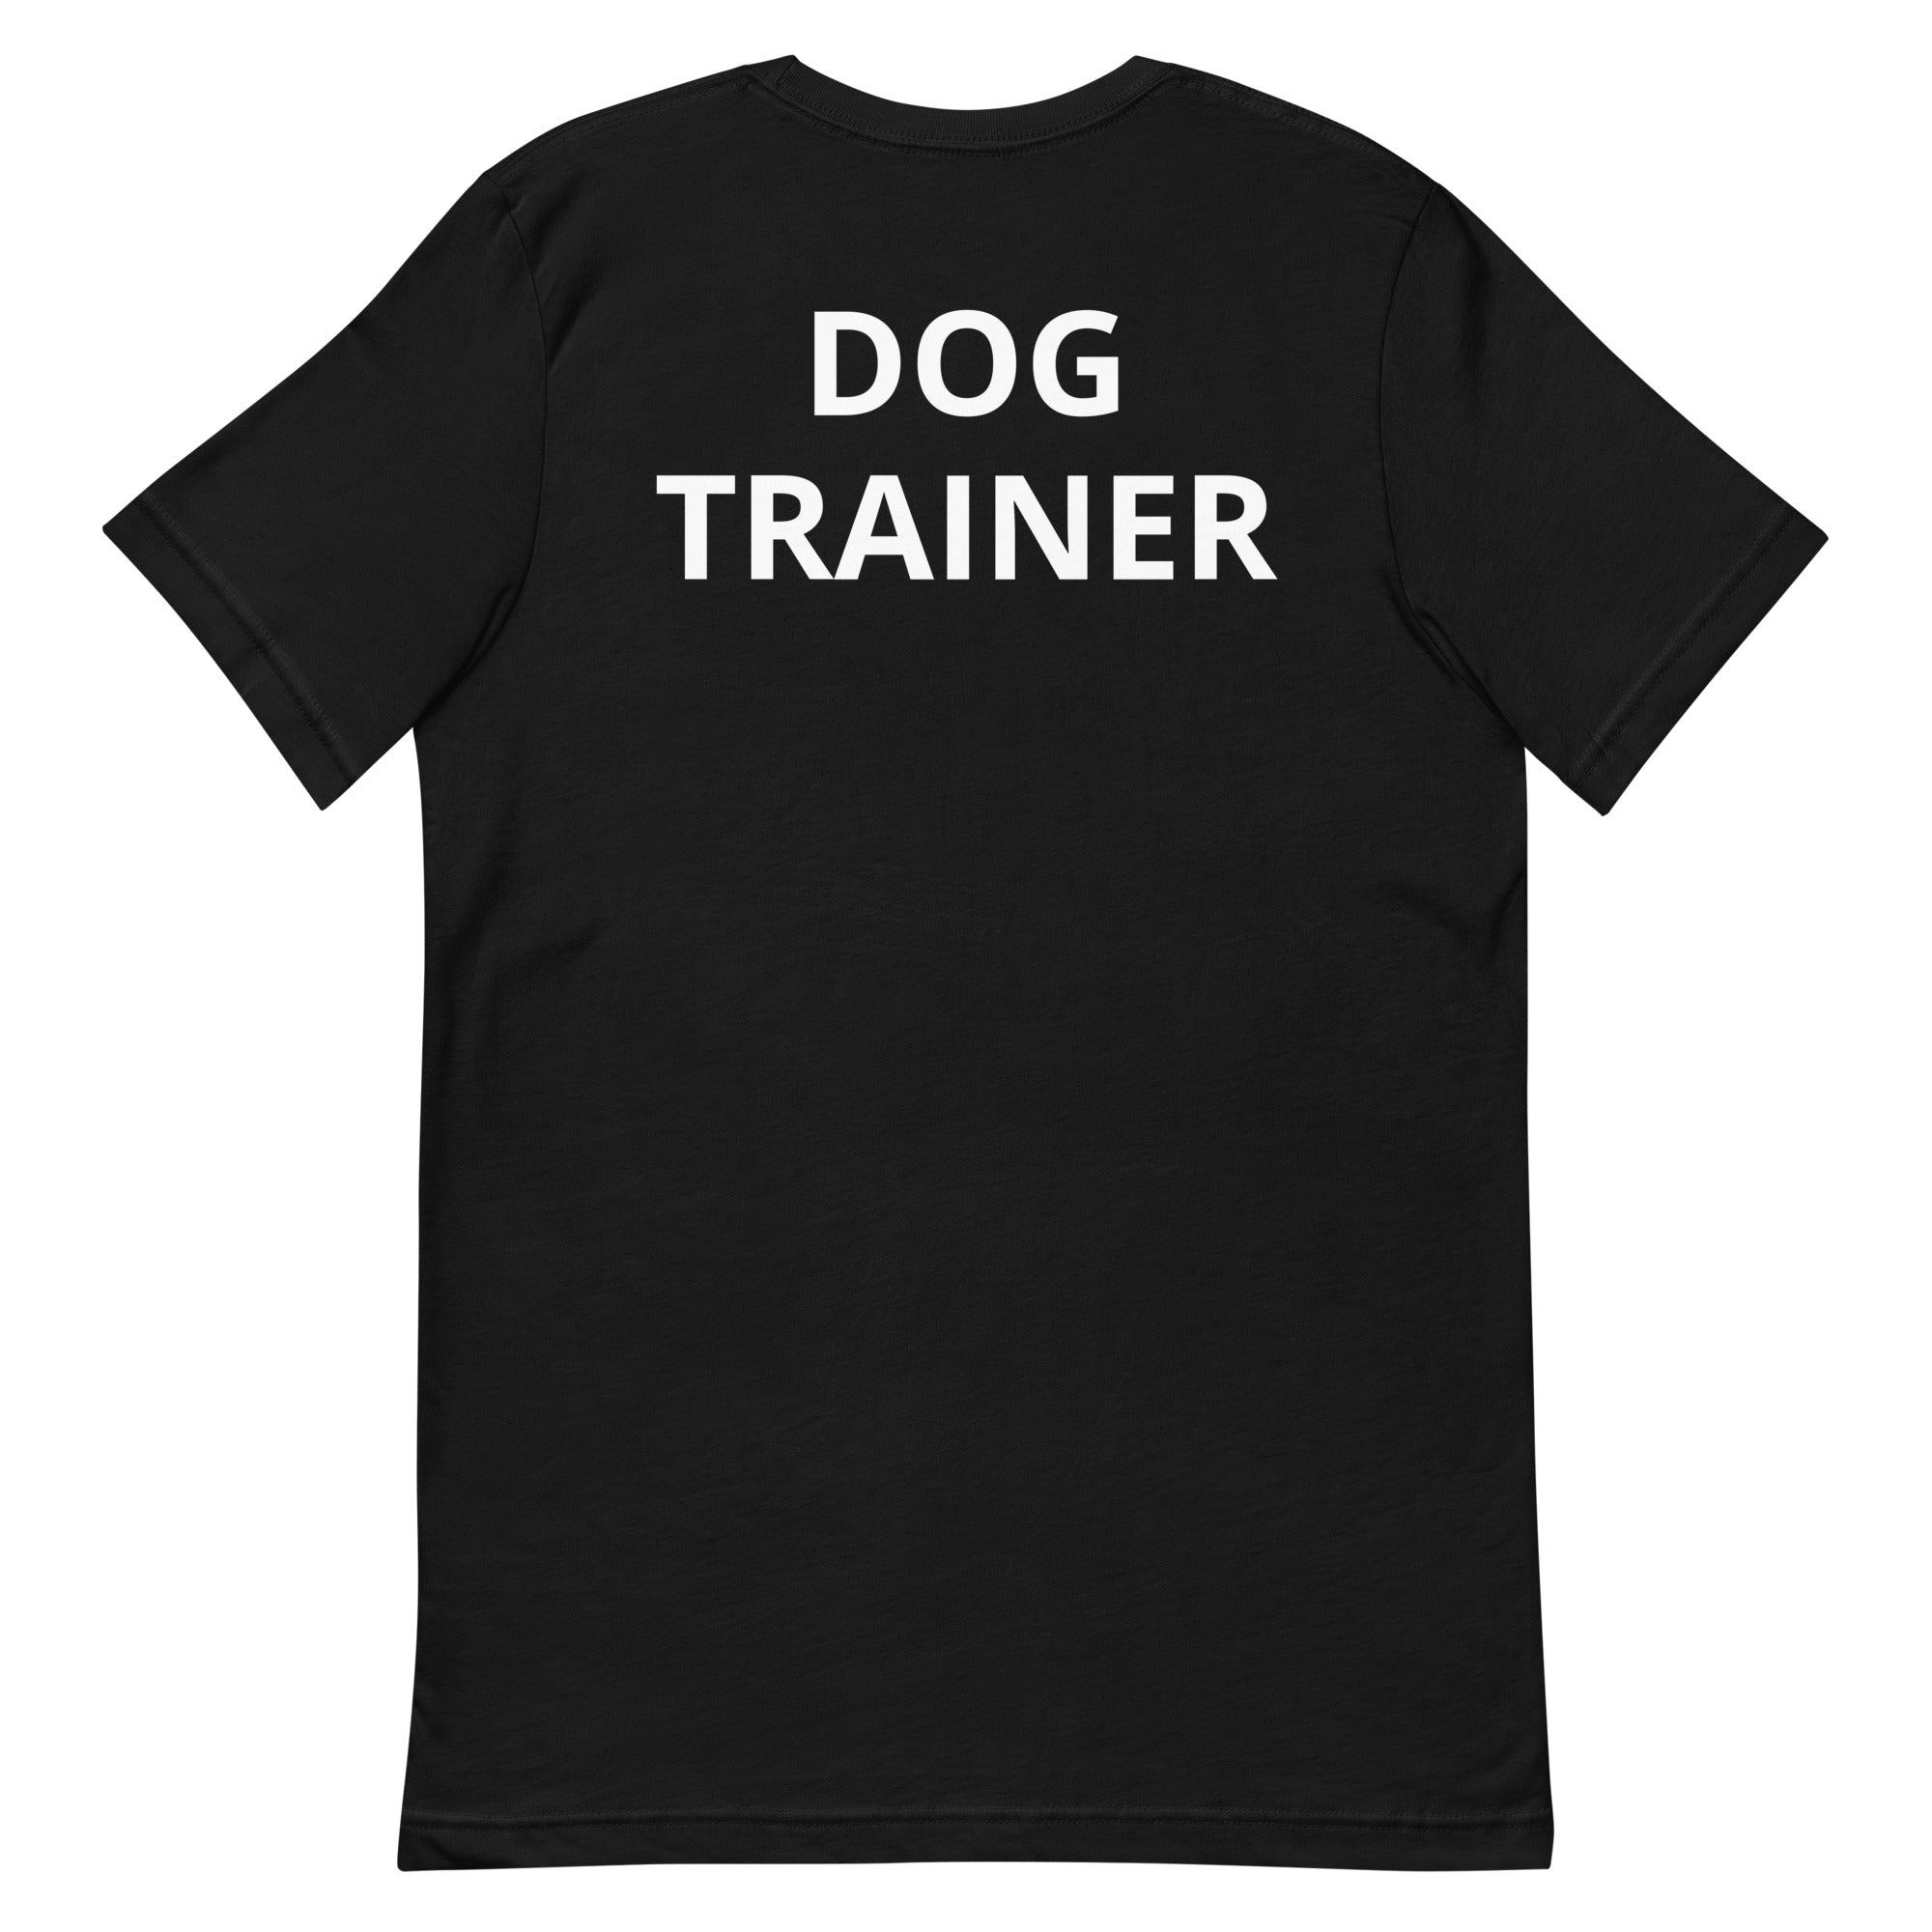 Get Real Dog Training Unisex t-shirt